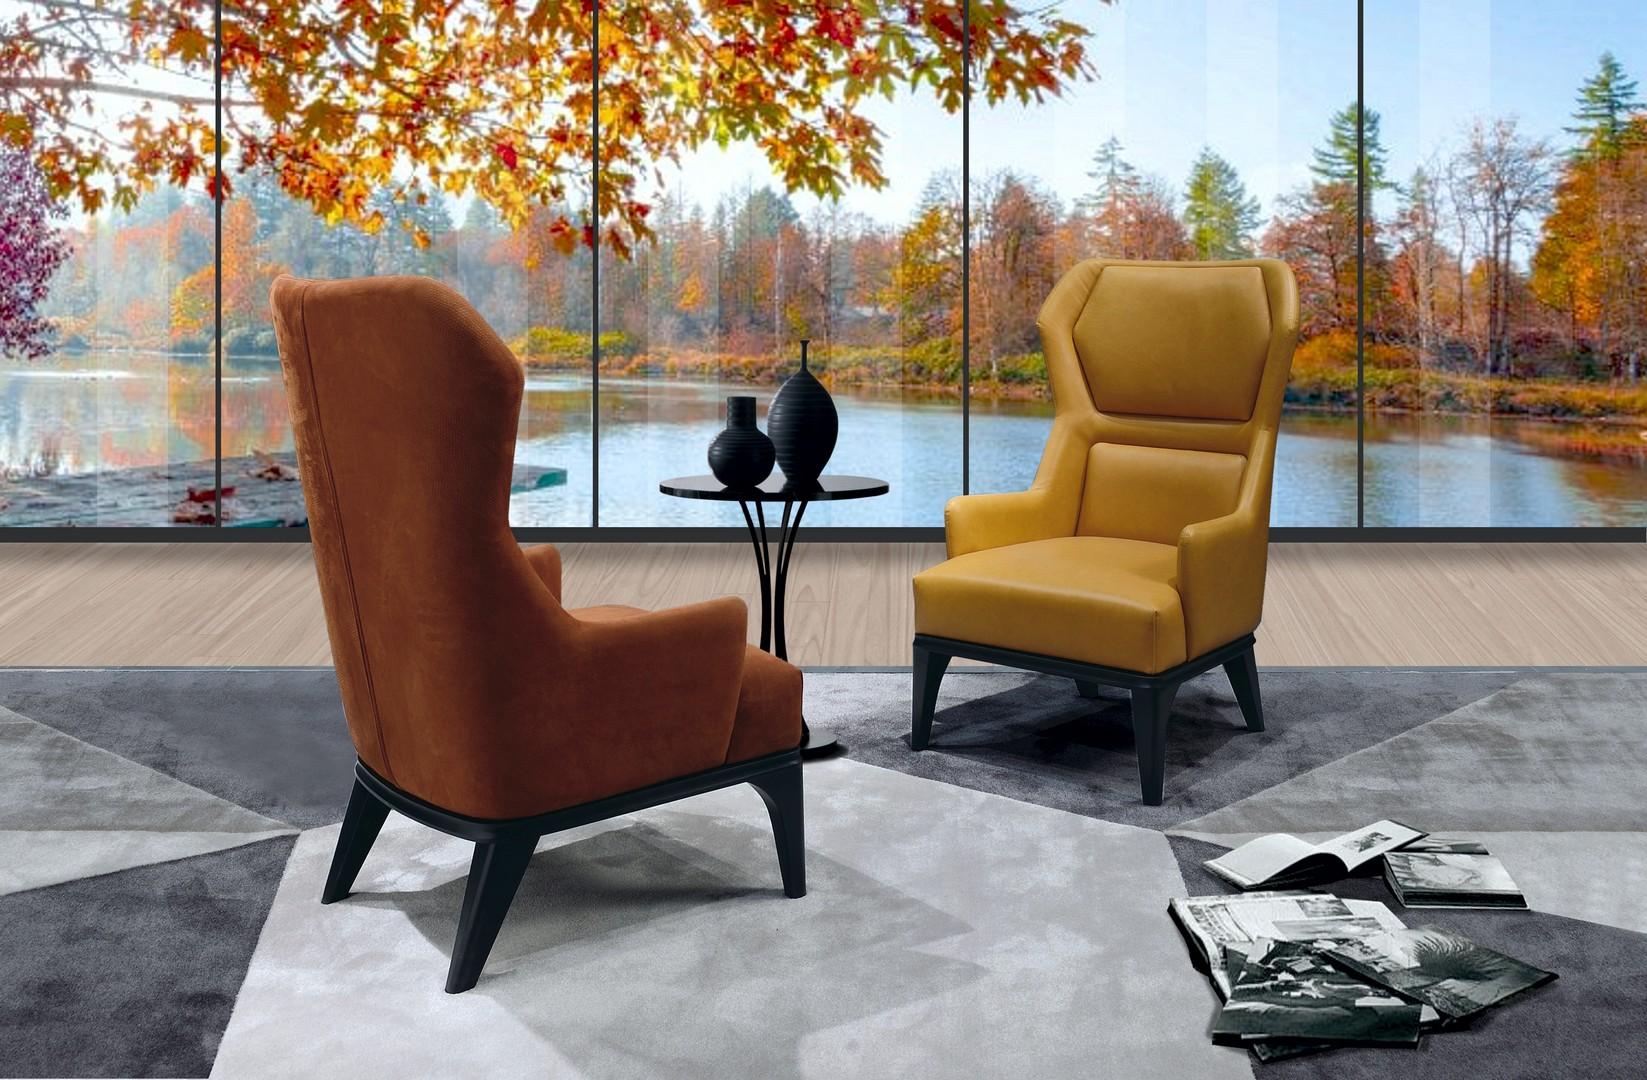 Relax-Sessel aus einer Holzstruktur, die mit Polyurethan in verschiedenen Dichten beschichtet ist. Der Sessel wird durch 